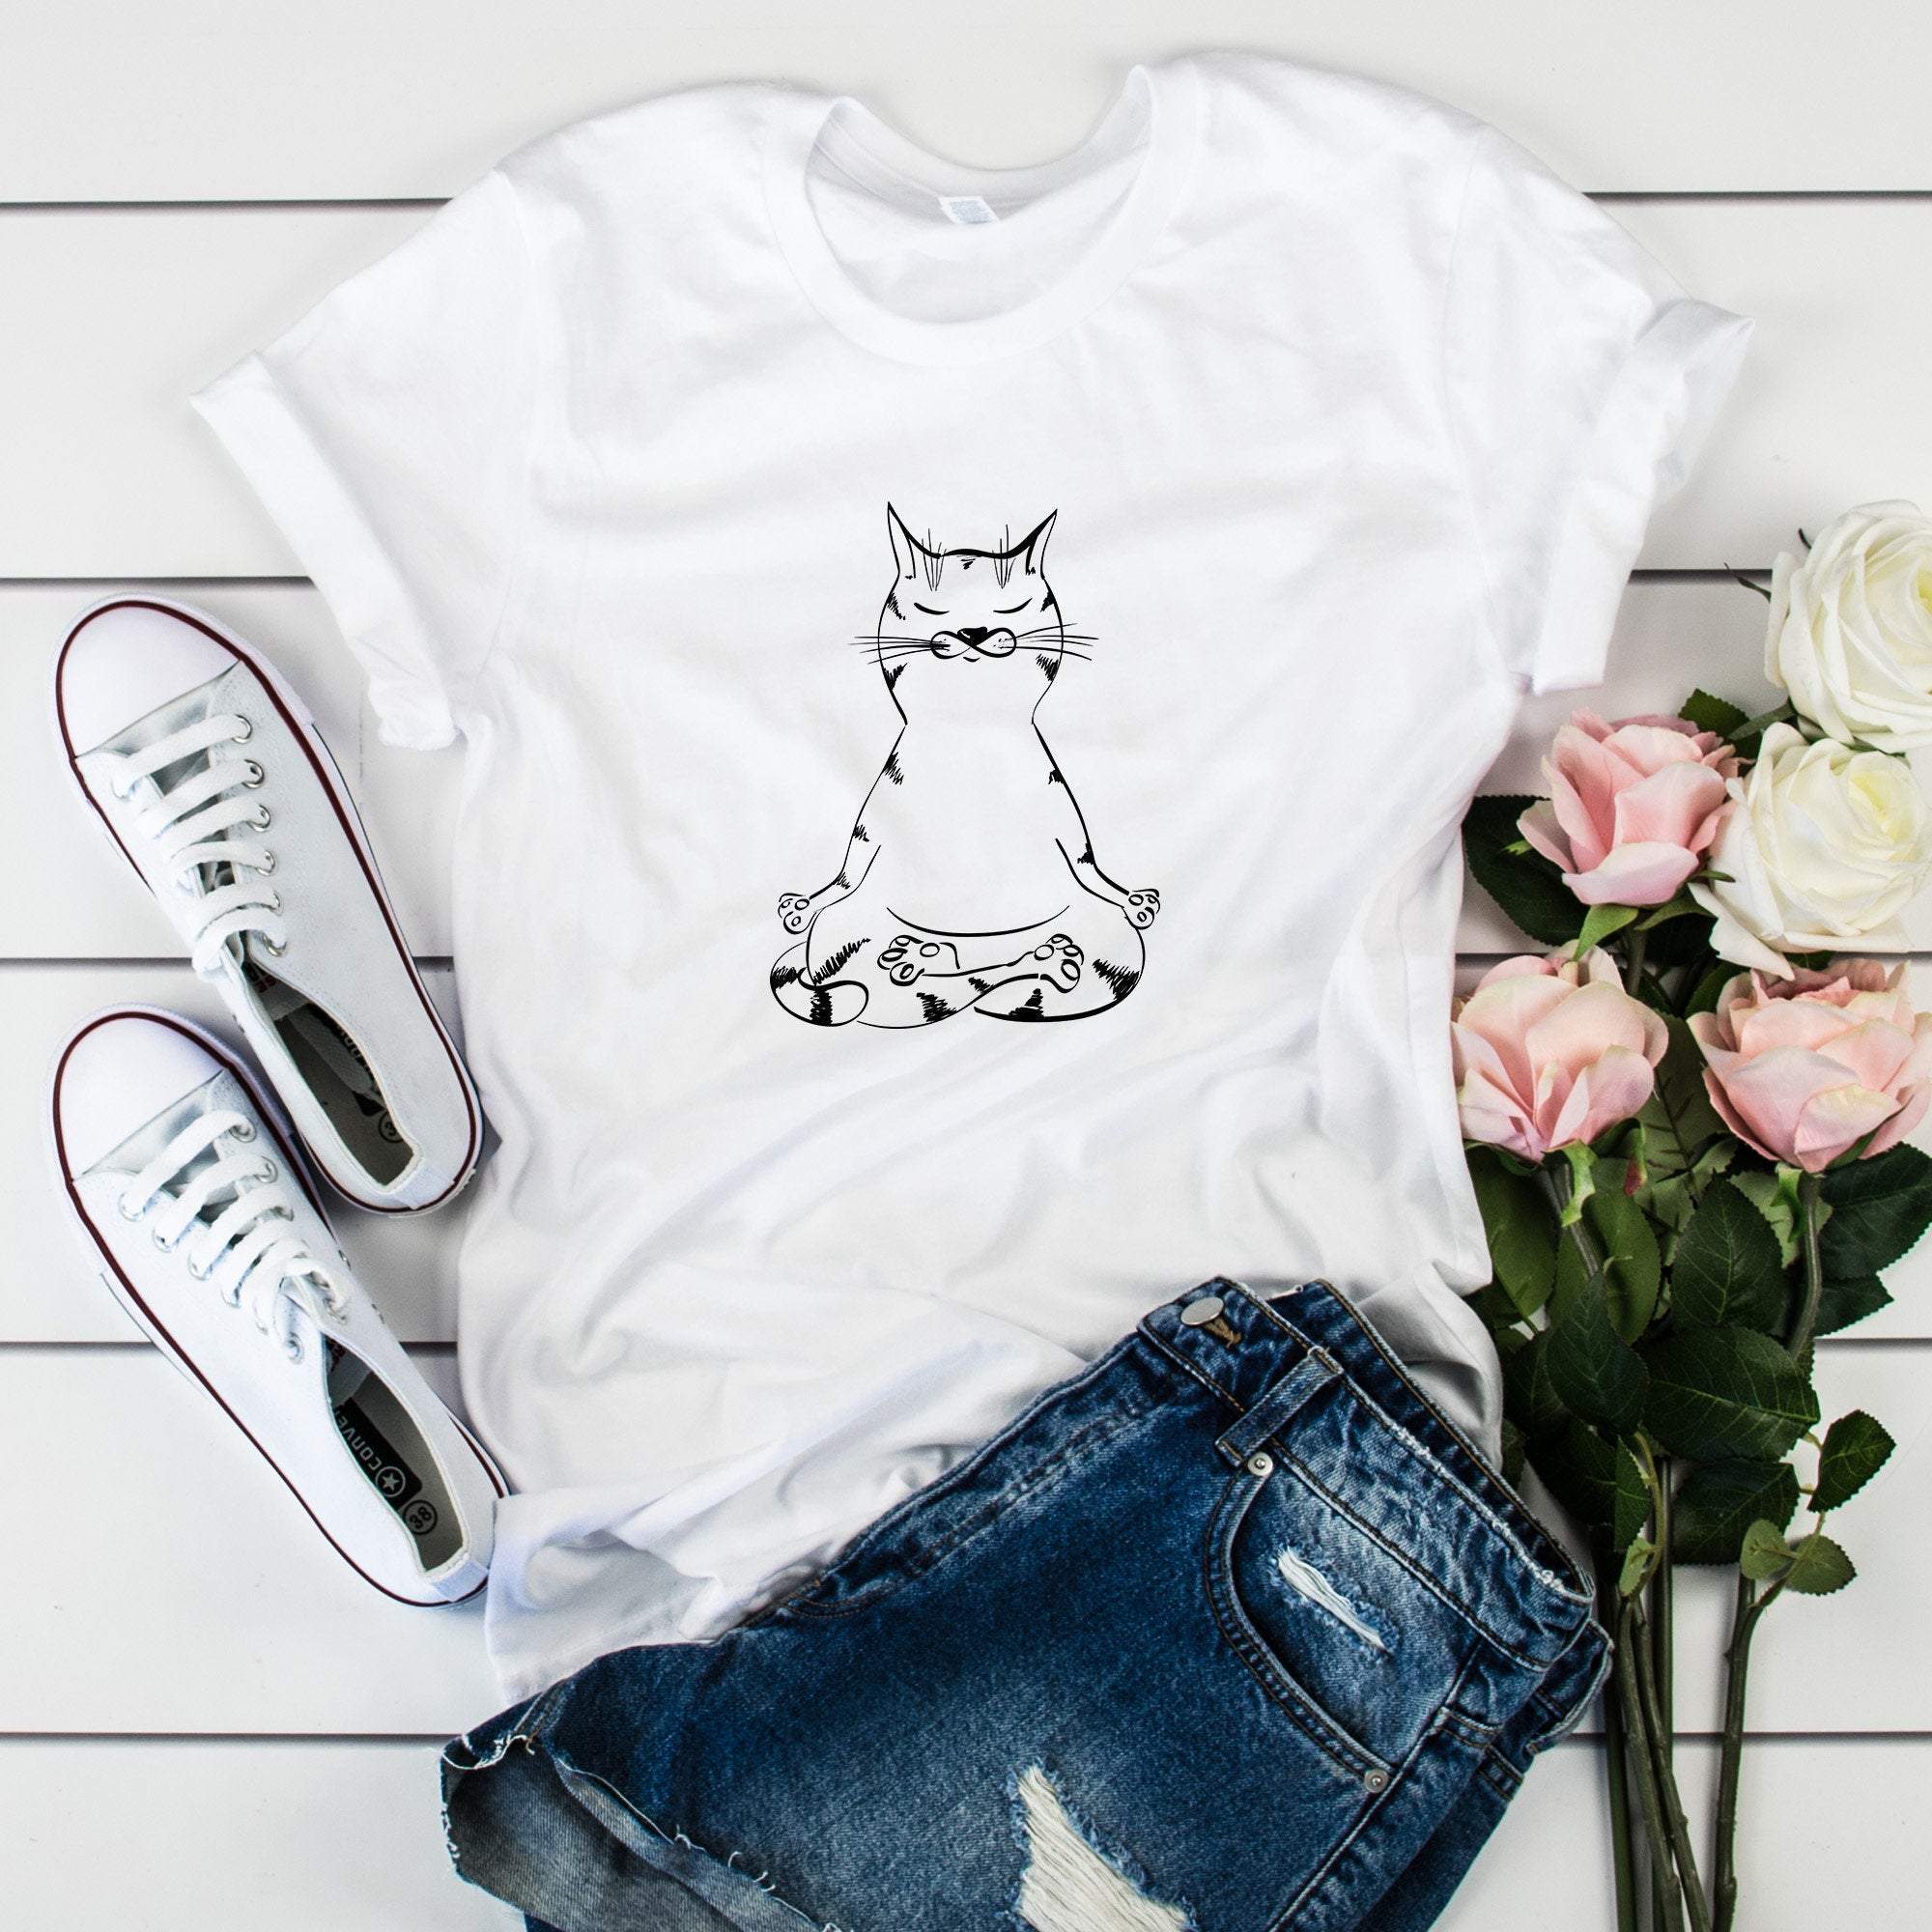 Cat yoga poses t-shirt, Cat Lover Gift for her, Yoga Gift for women